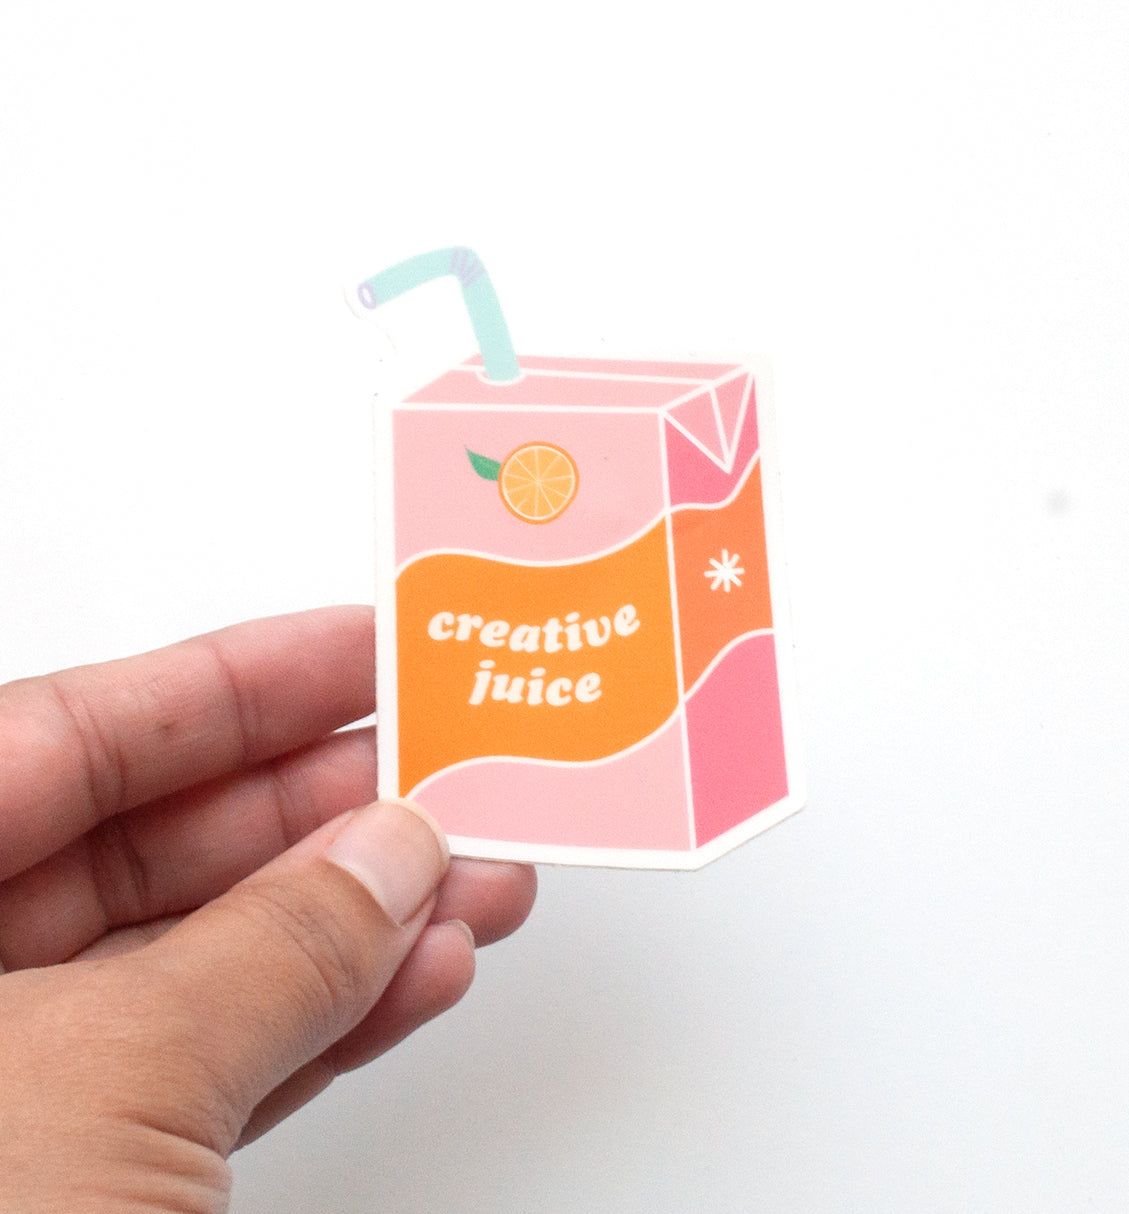 Creative Juice sticker